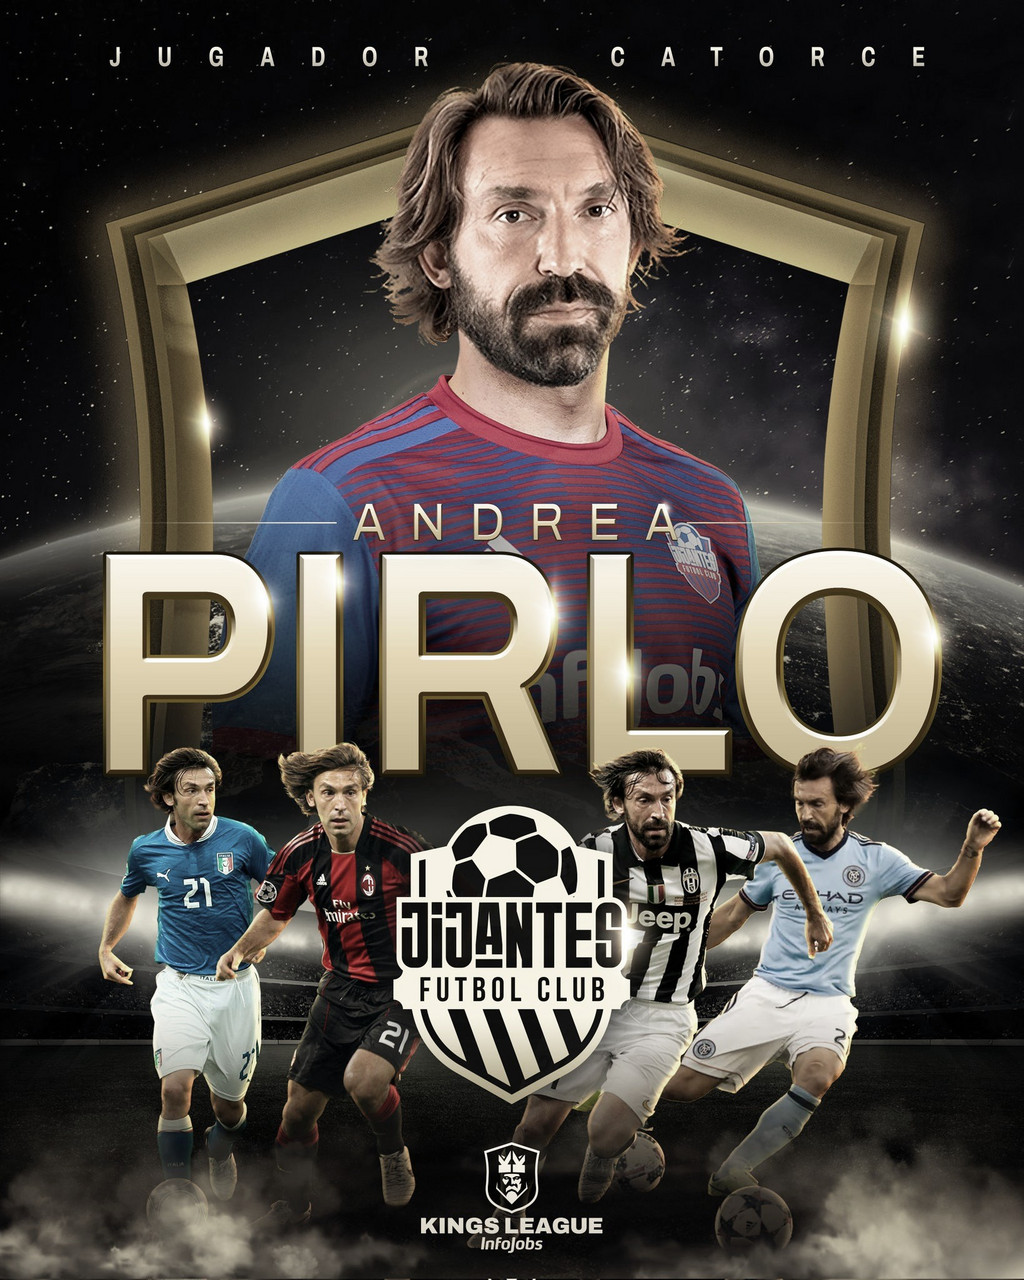 After Kings 4: Andrea Pirlo jugará con Jijantes